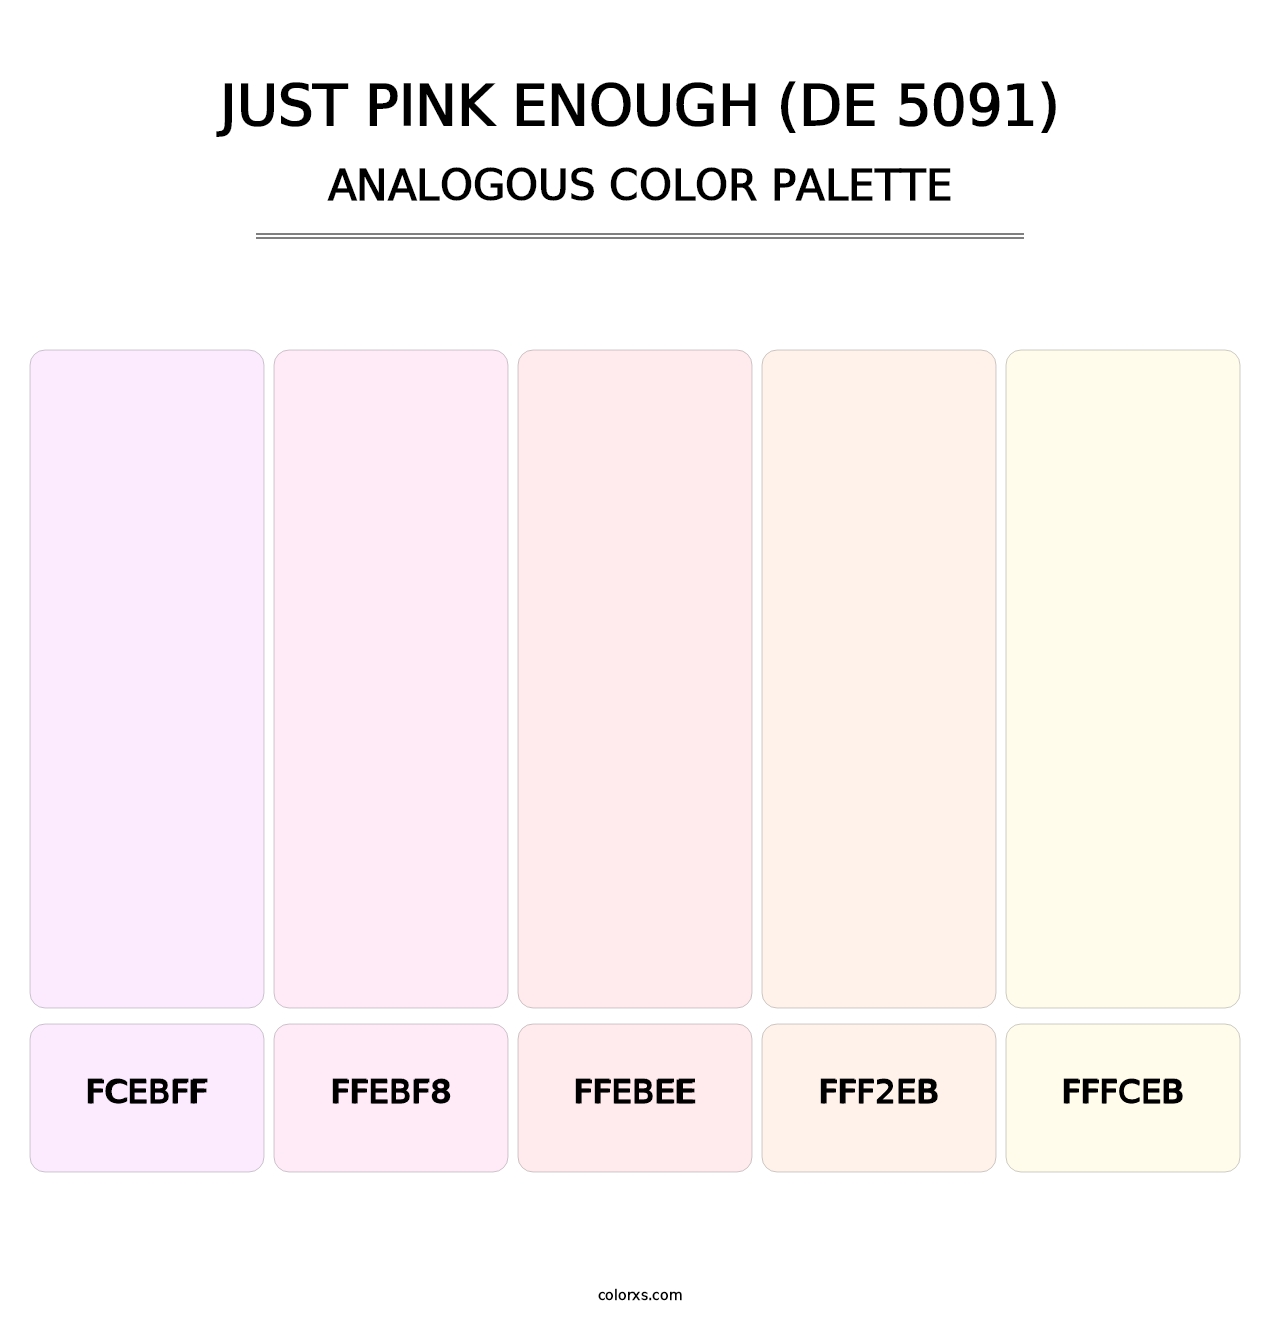 Just Pink Enough (DE 5091) - Analogous Color Palette